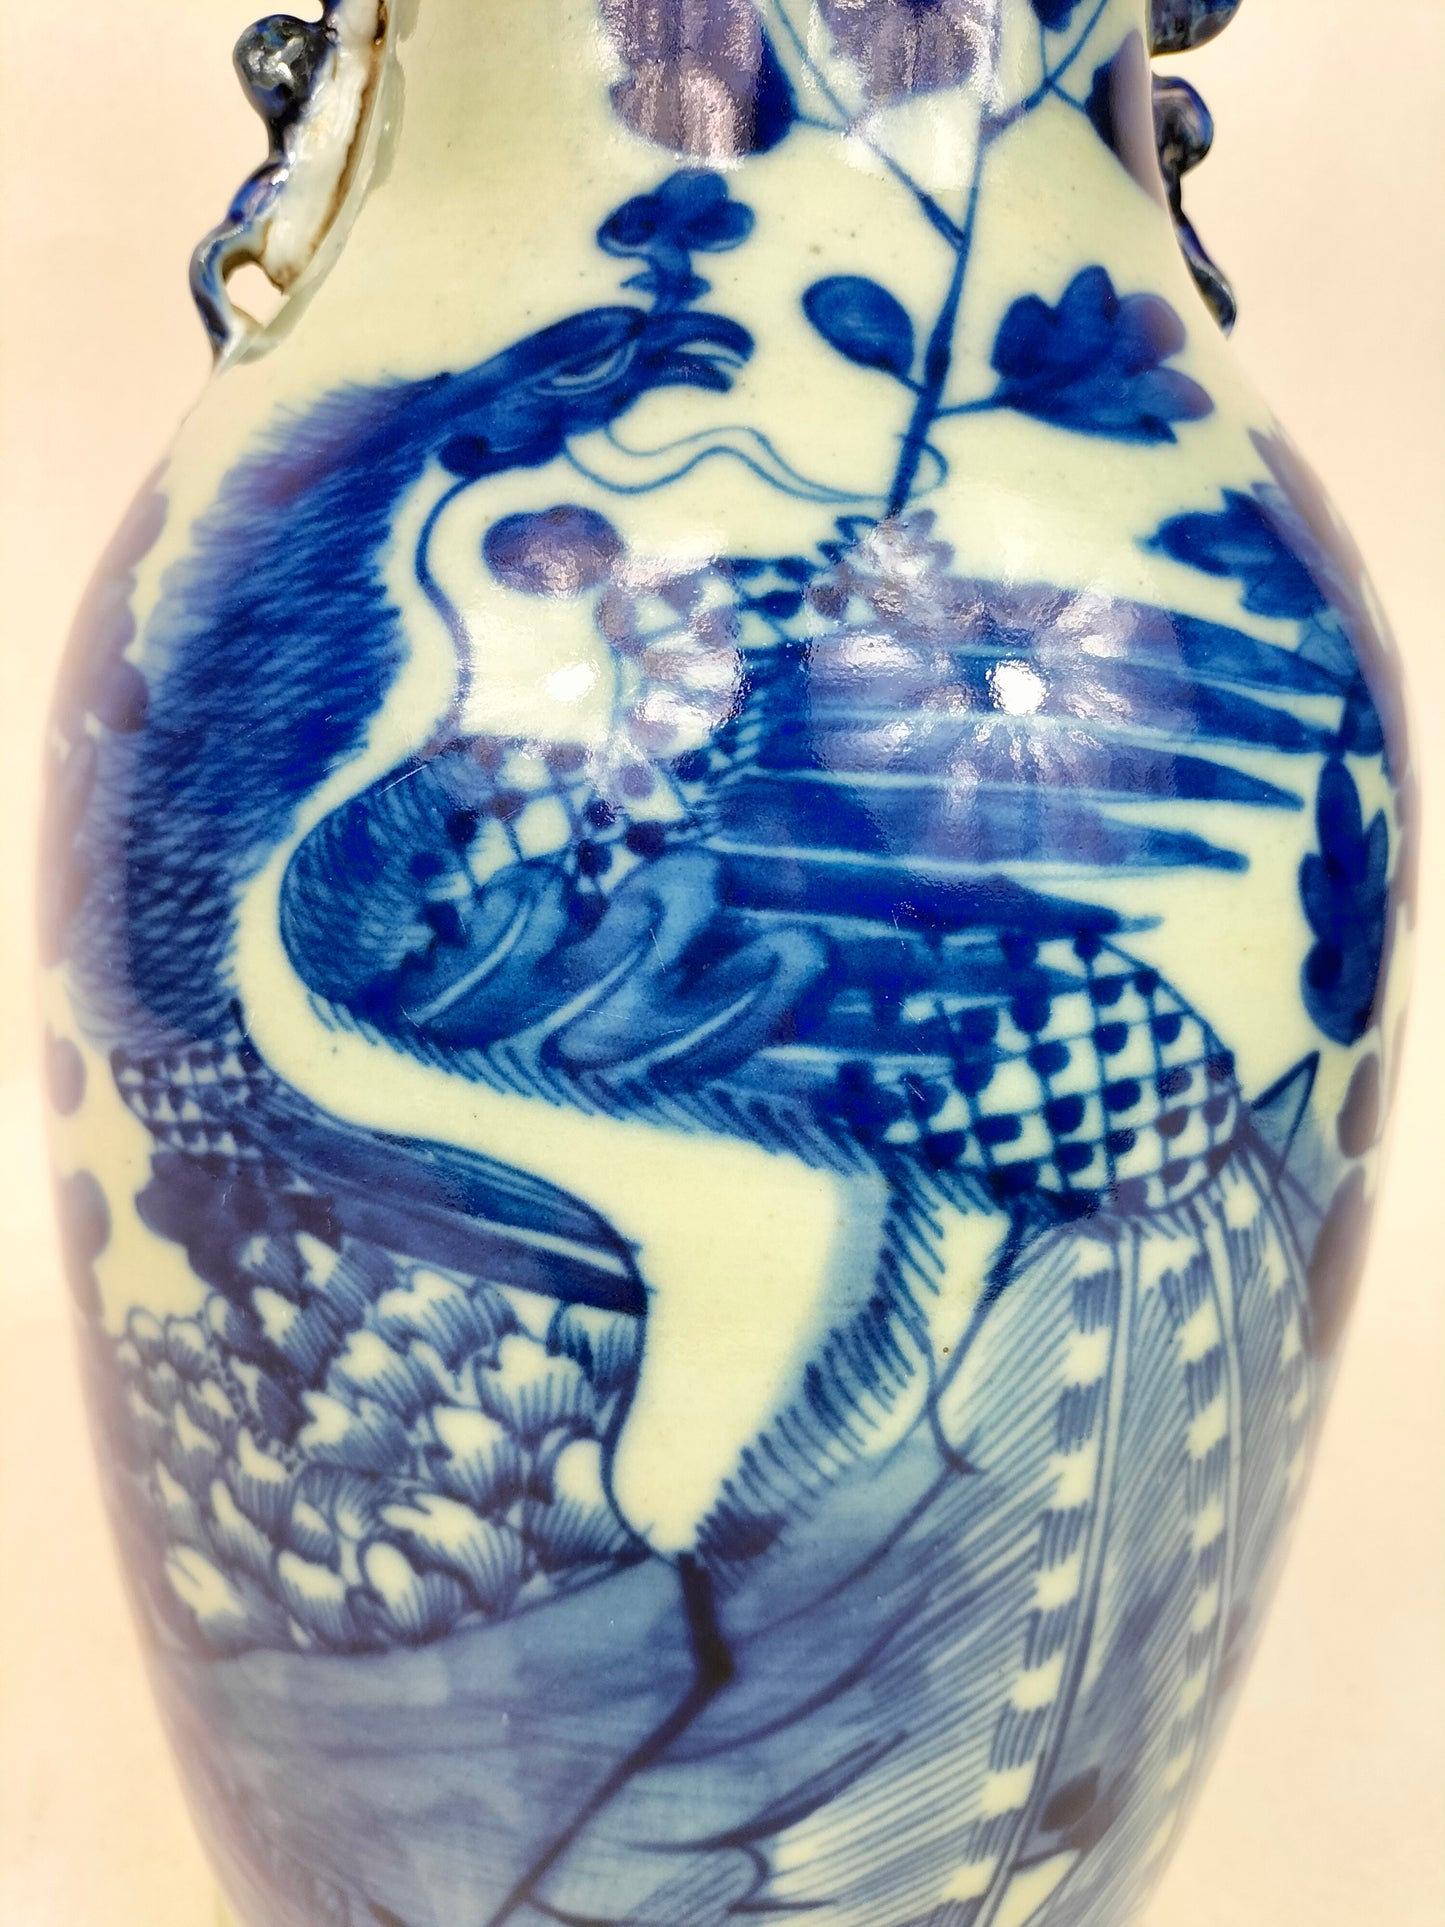 Bình men ngọc cổ Trung Quốc trang trí chim và hoa // Nhà Thanh - thế kỷ 19